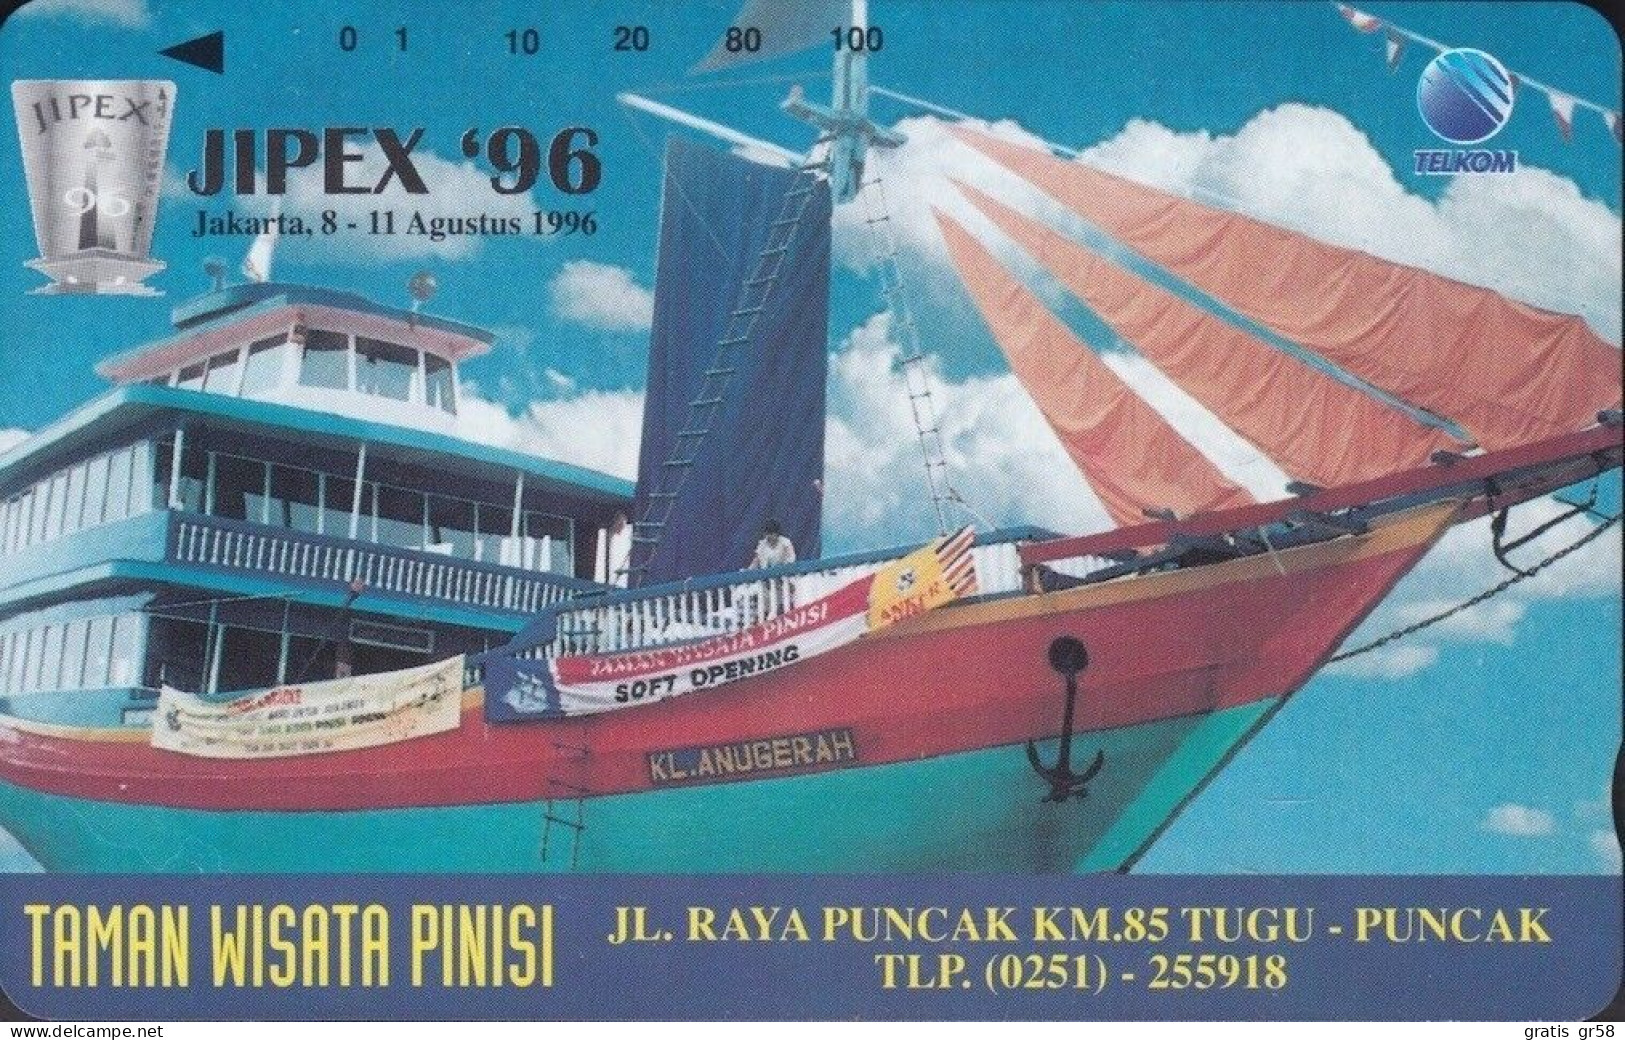 Indonesia - P 0425, Taman Wisata Pinisi - JIPEX '96, 1000ex, Mint Unused - Indonesia